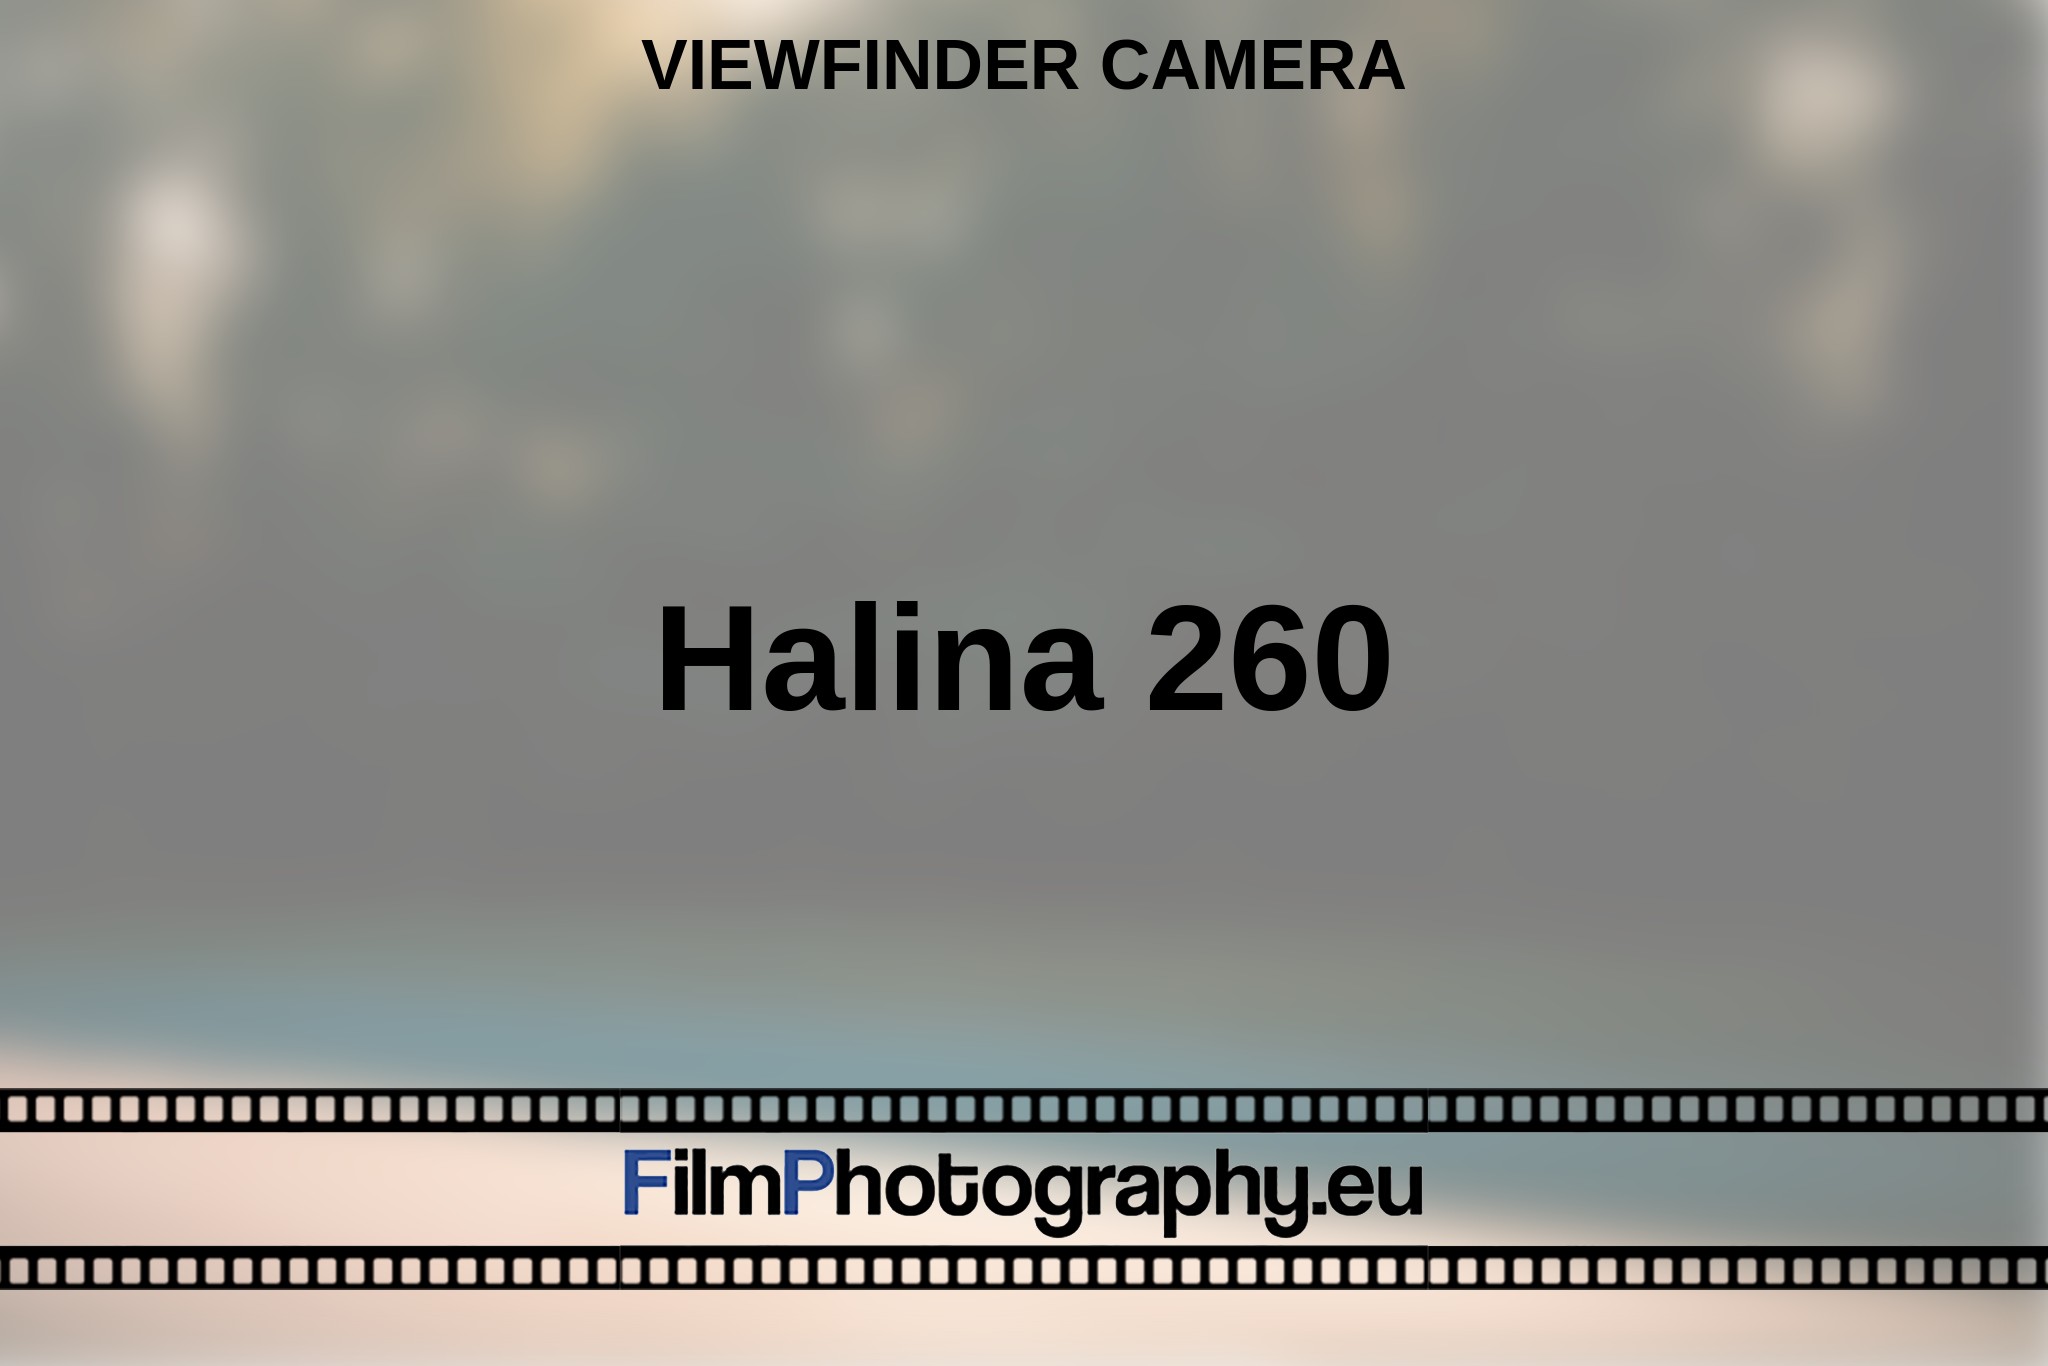 halina-260-viewfinder-camera-en-bnv.jpg